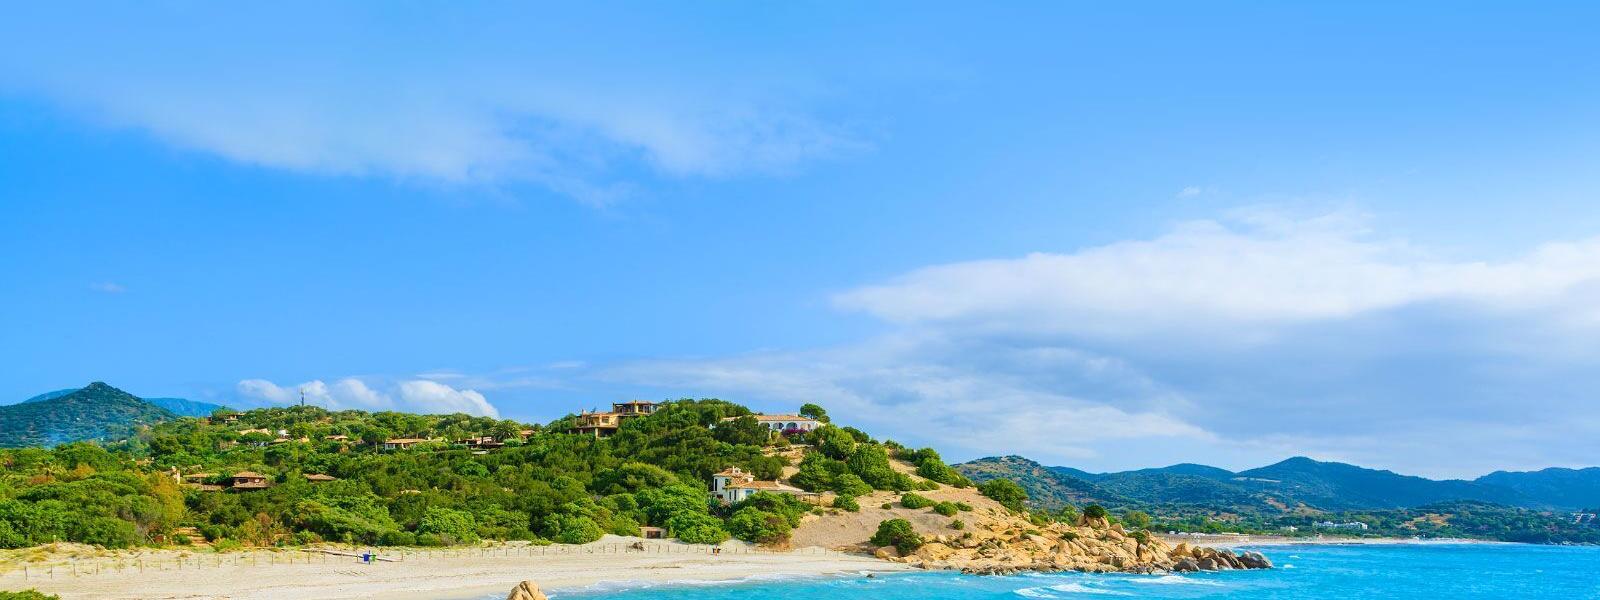 Ferienwohnung und Ferienhaus in Baja Sardinia - e-domizil